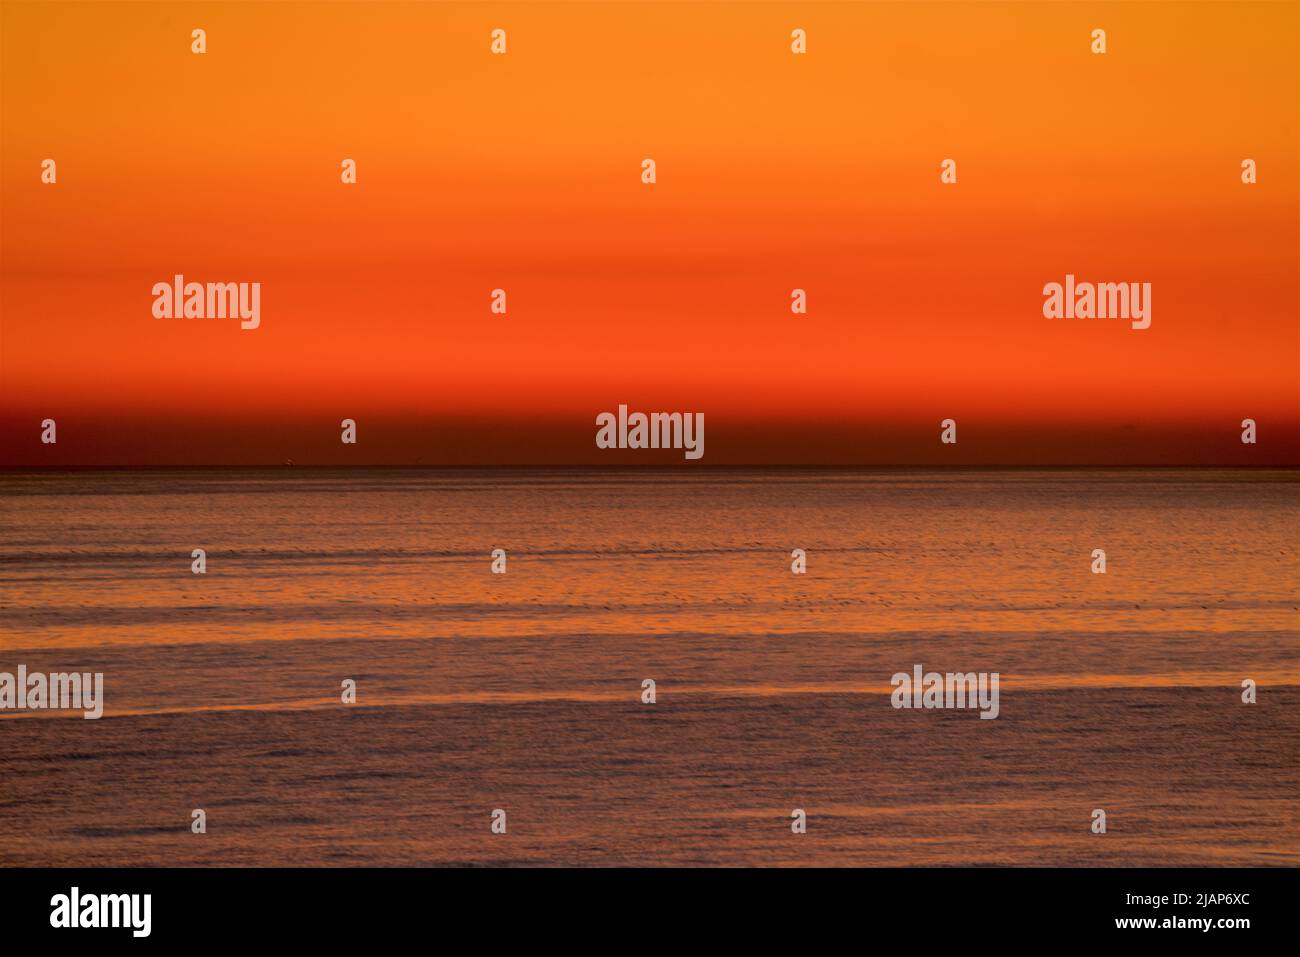 Détail des ondulations sur une mer calme avec un horizon sombre et doré au-delà. Chaîne anglaise, Royaume-Uni. Banque D'Images